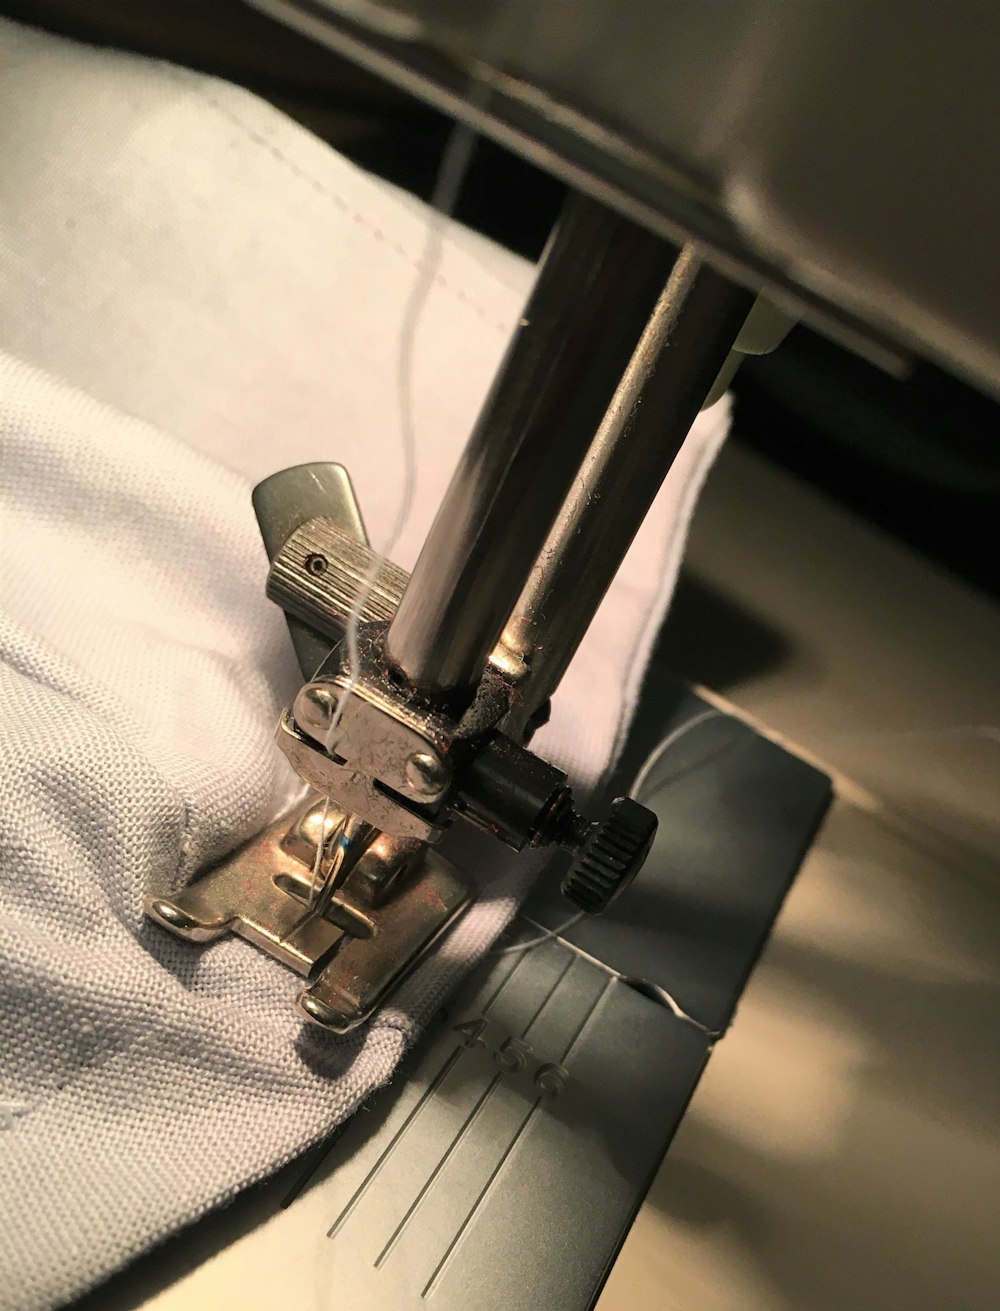 gray metal tool on white textile